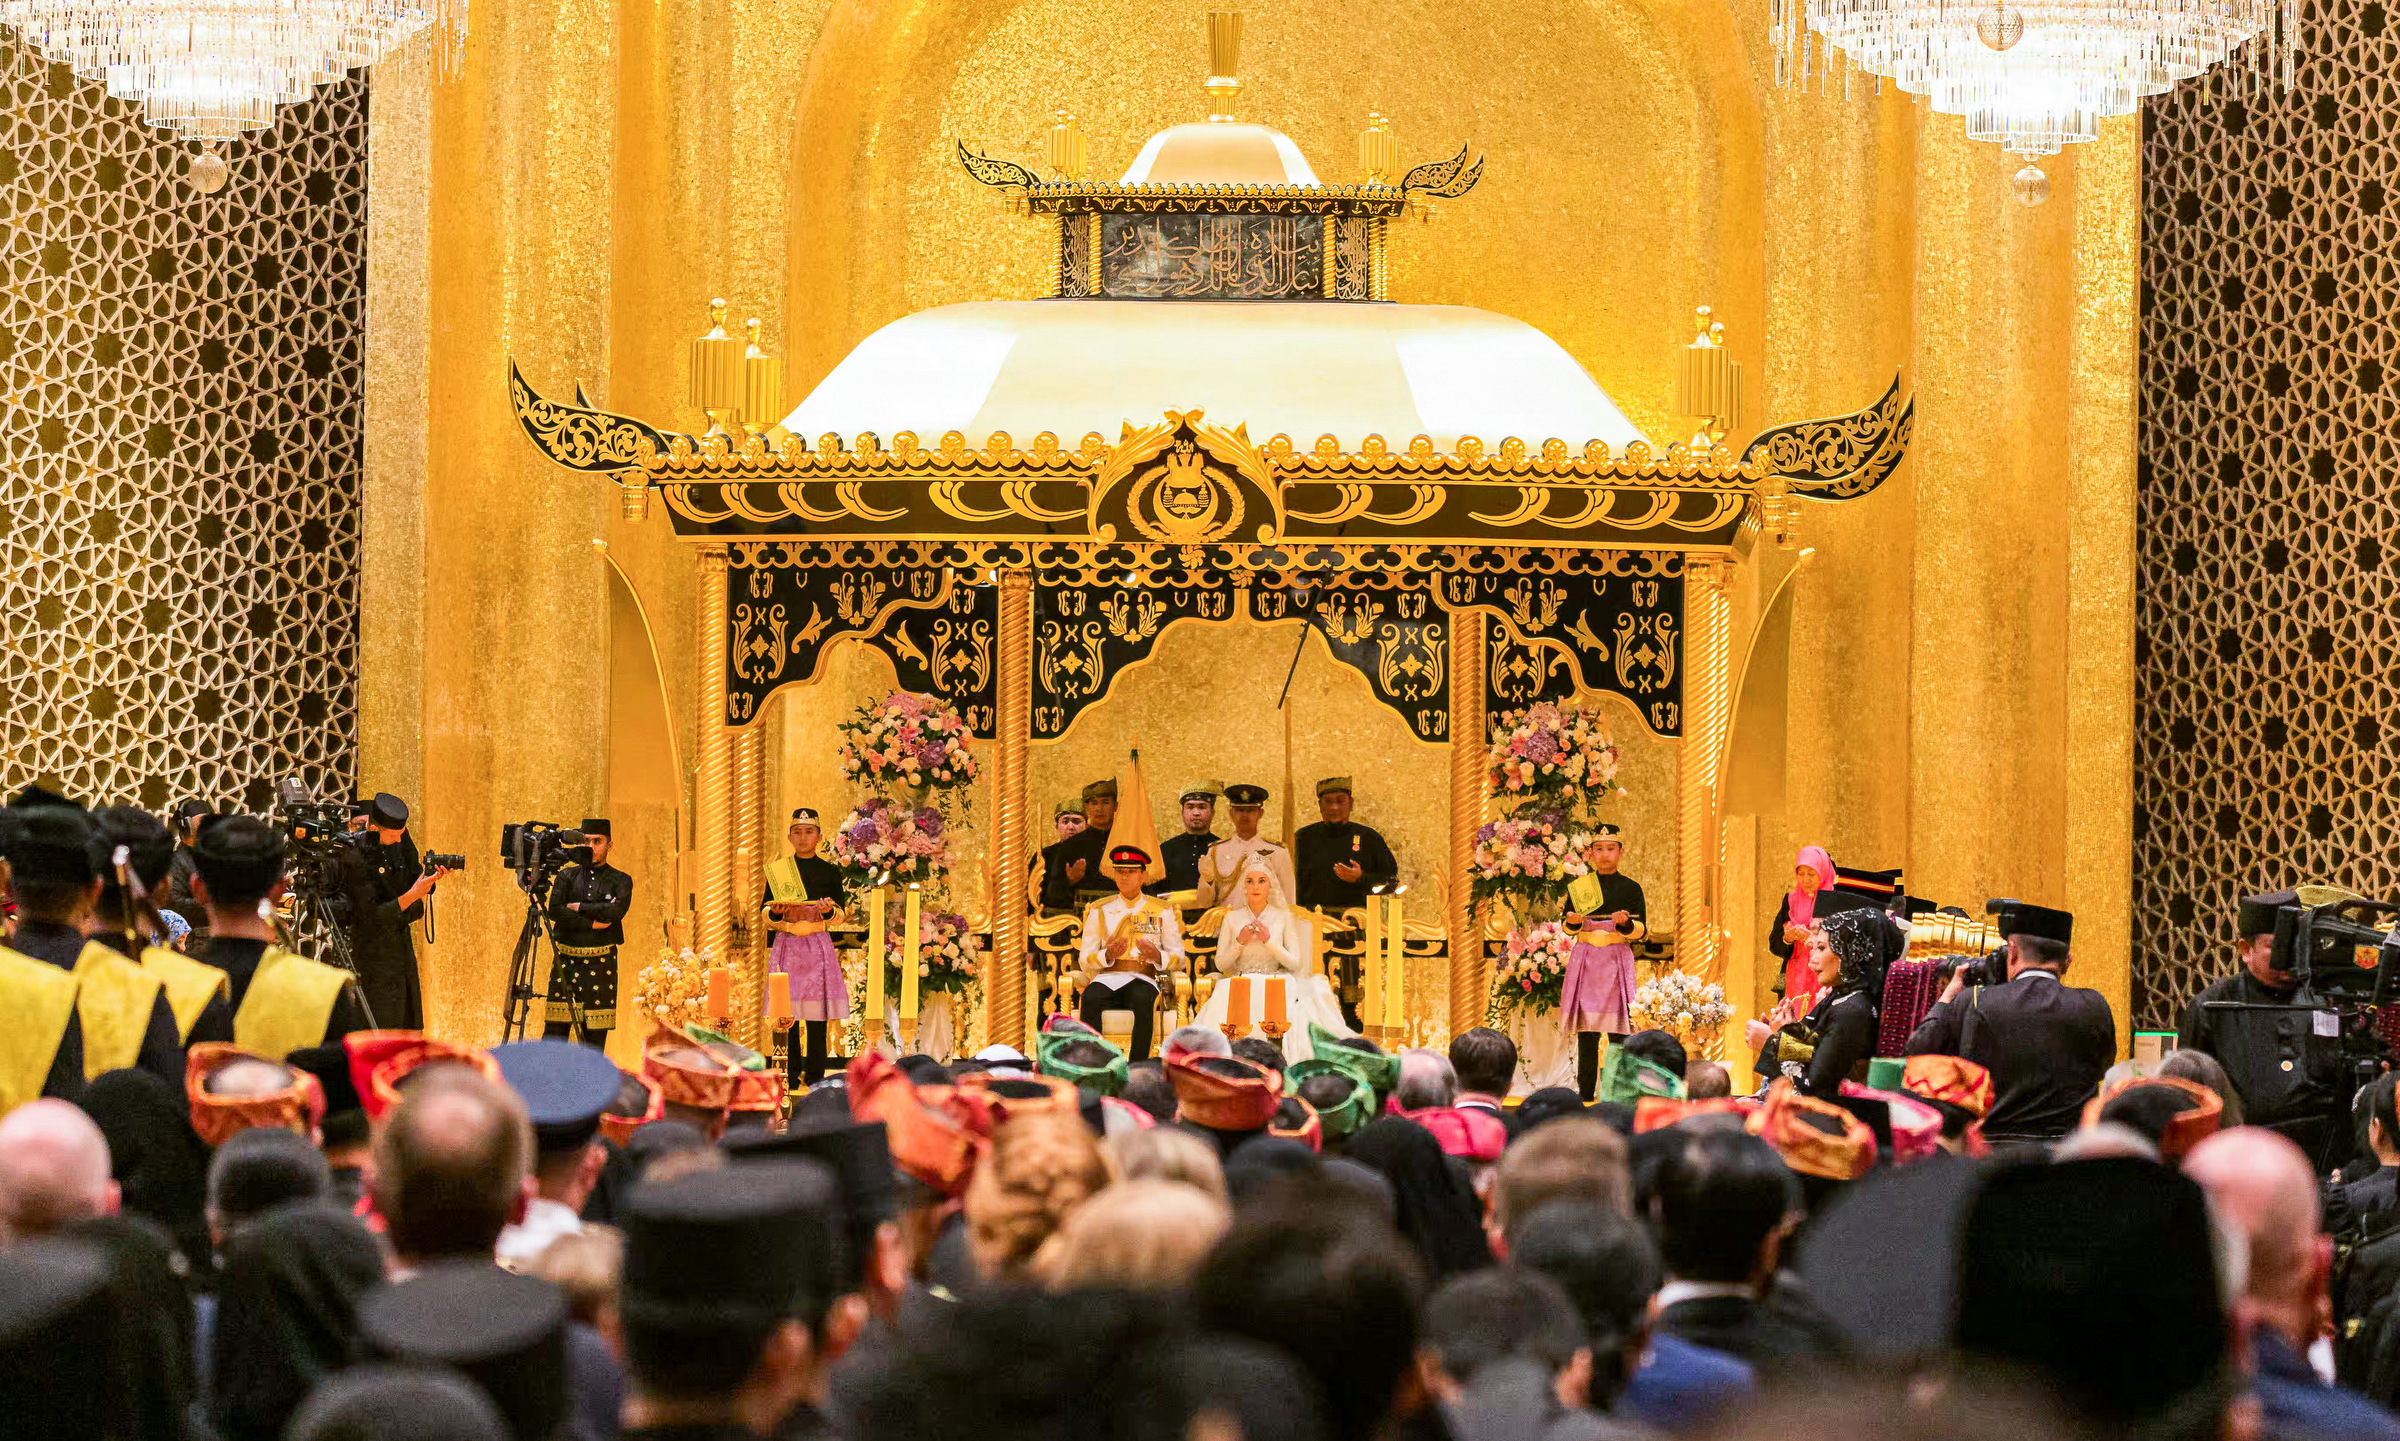 Có gì trong đám cưới kéo dài 10 ngày của Hoàng tử Brunei